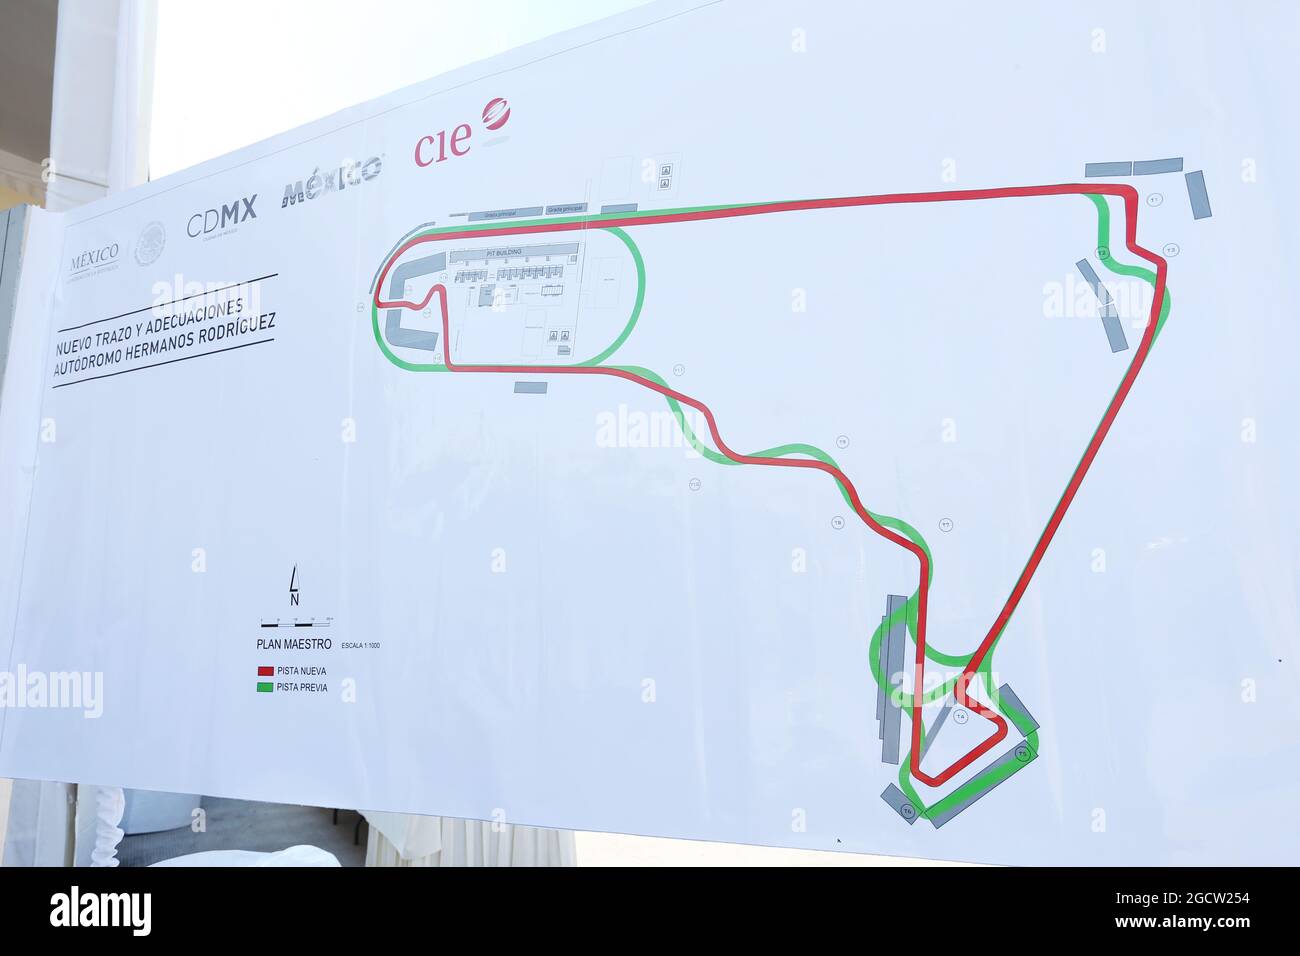 Carte du circuit. Visite du circuit Autodromo Hermanos Rodriguez, Mexico, Mexique. Jeudi 22 janvier 2015. Banque D'Images